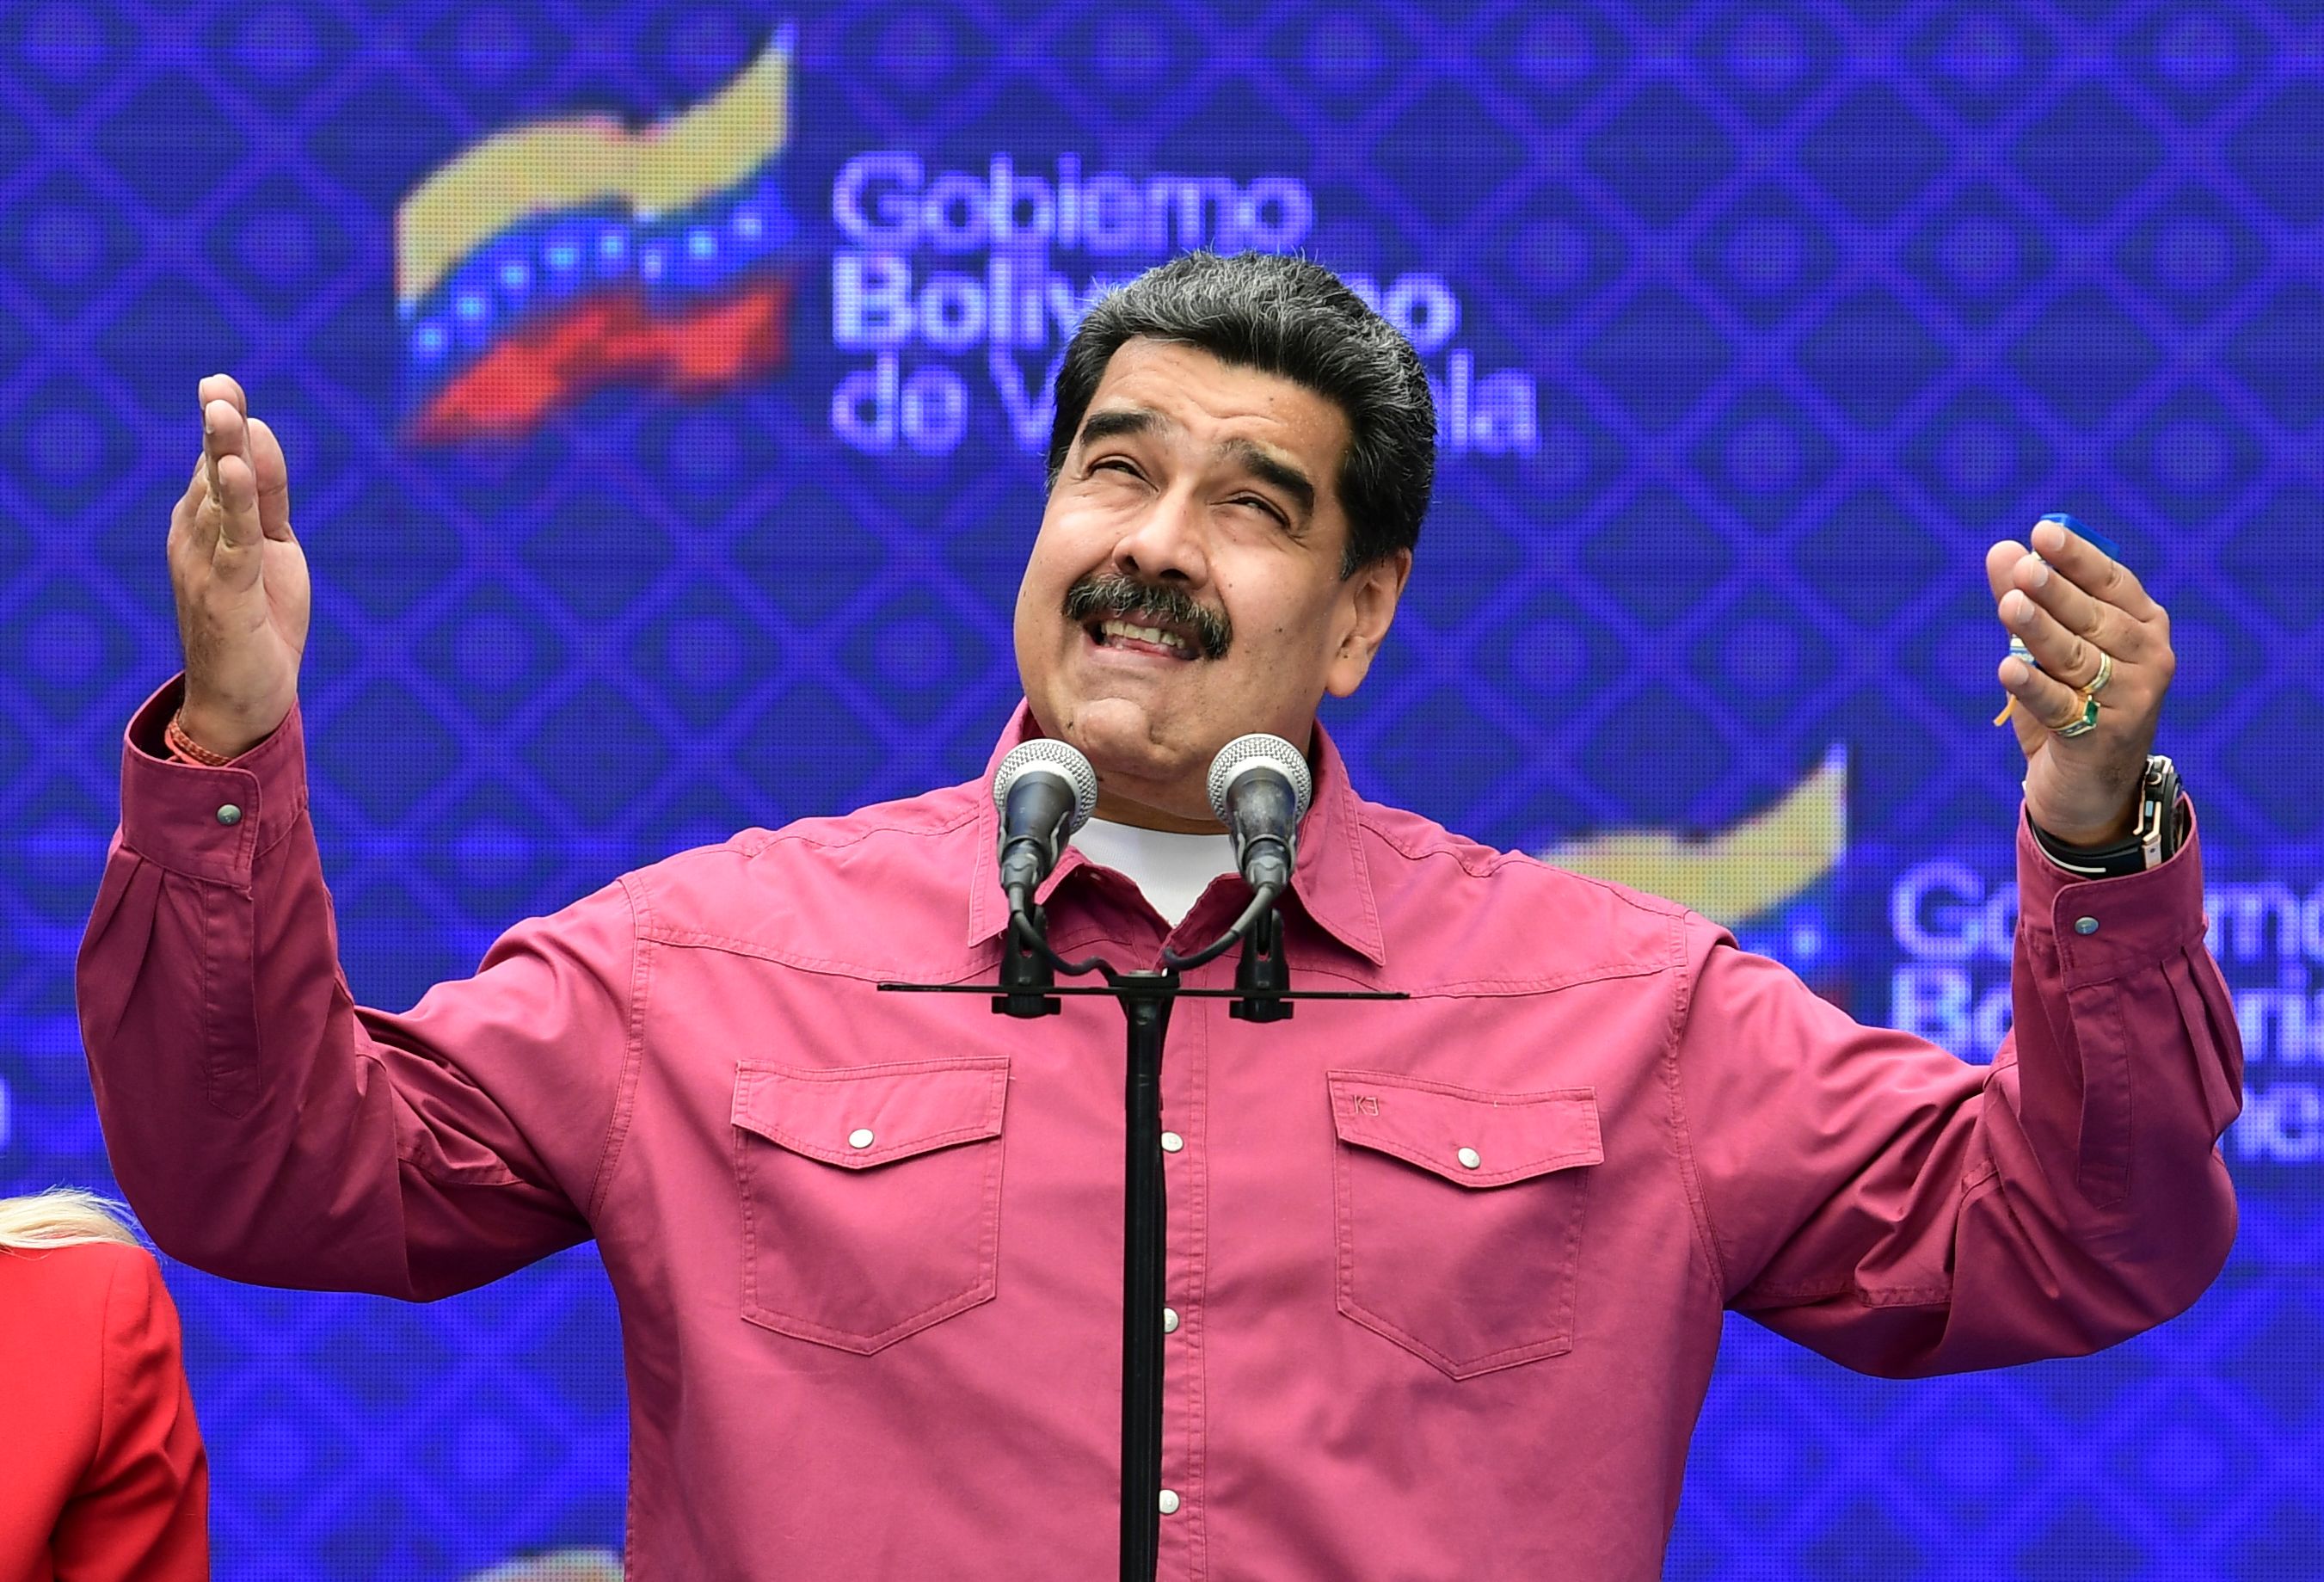 El presidente de Venezuela, Nicolás Maduro, recobró el control del Parlamento tras la victoria del chavismo en unas elecciones legislativas. (Foto Prensa Libre: AFP)